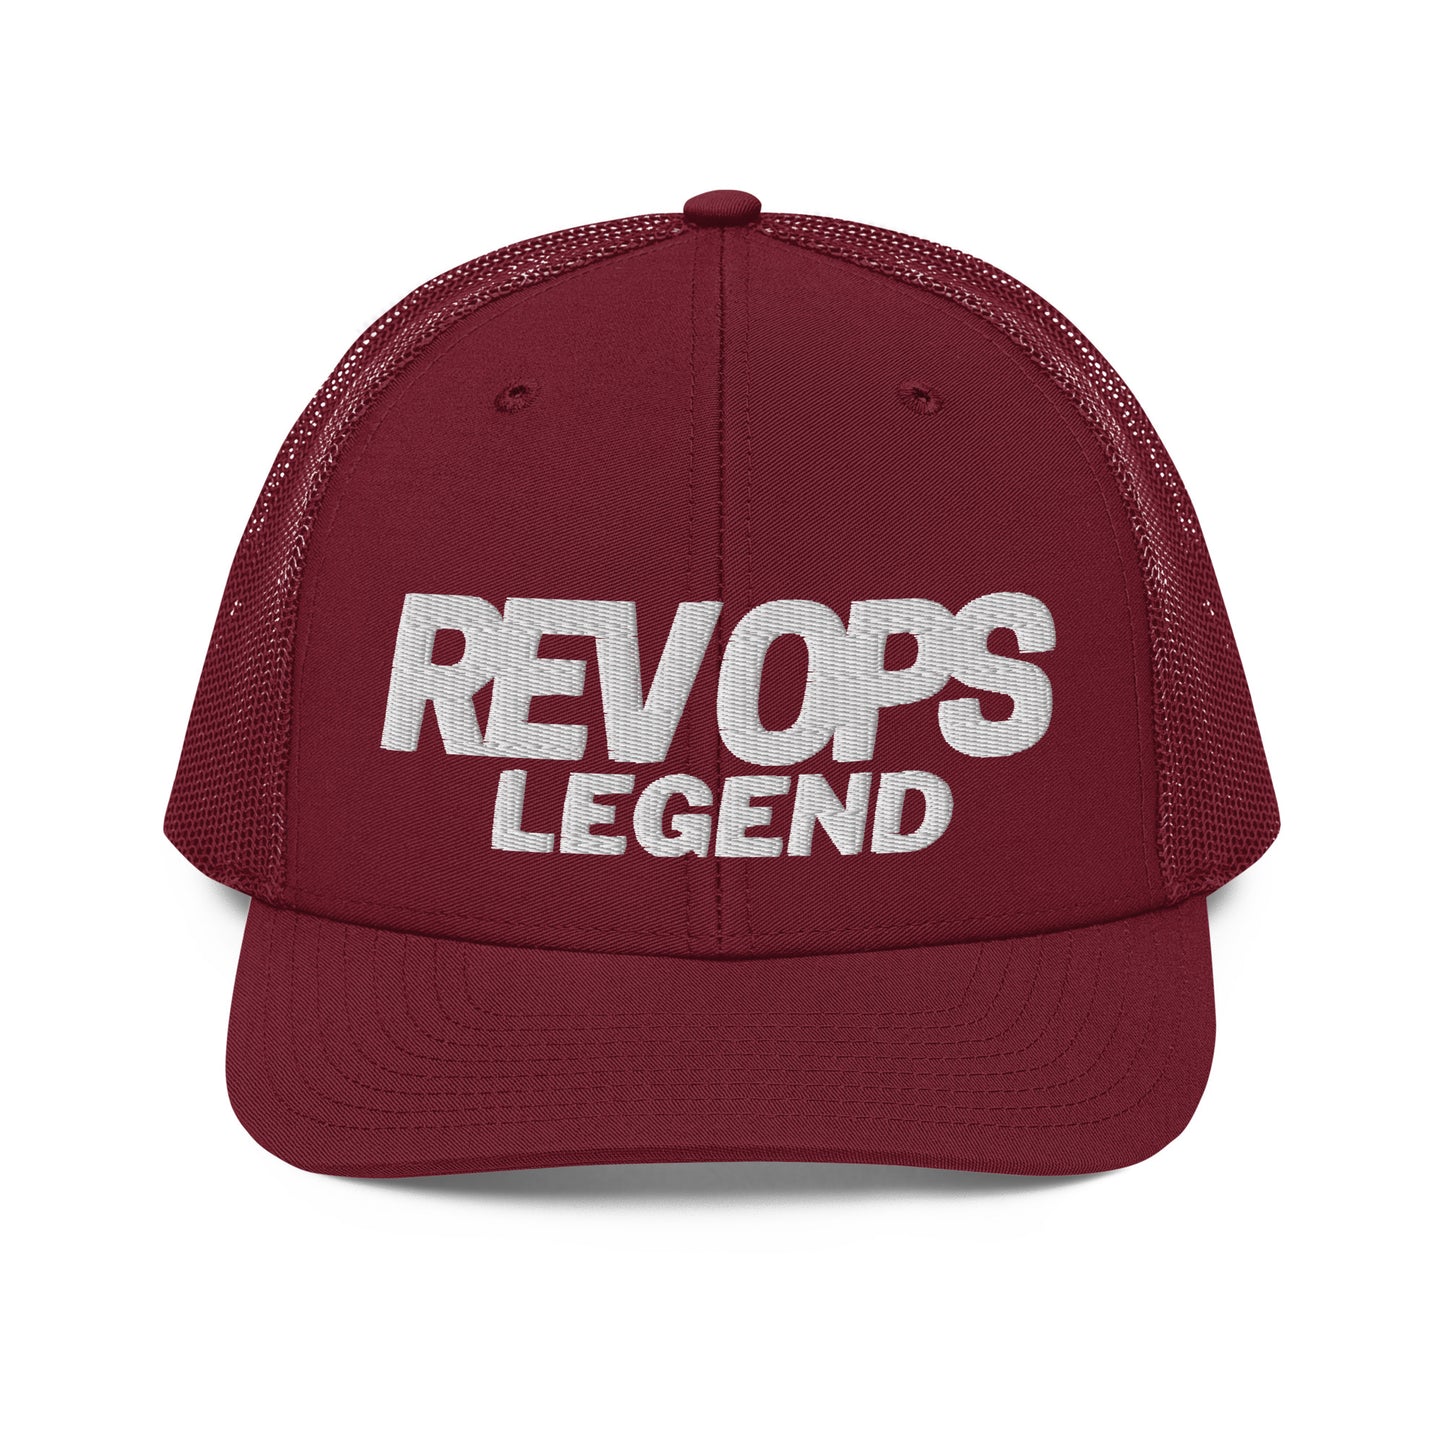 Rev Ops Legend Mesh Trucker Cap